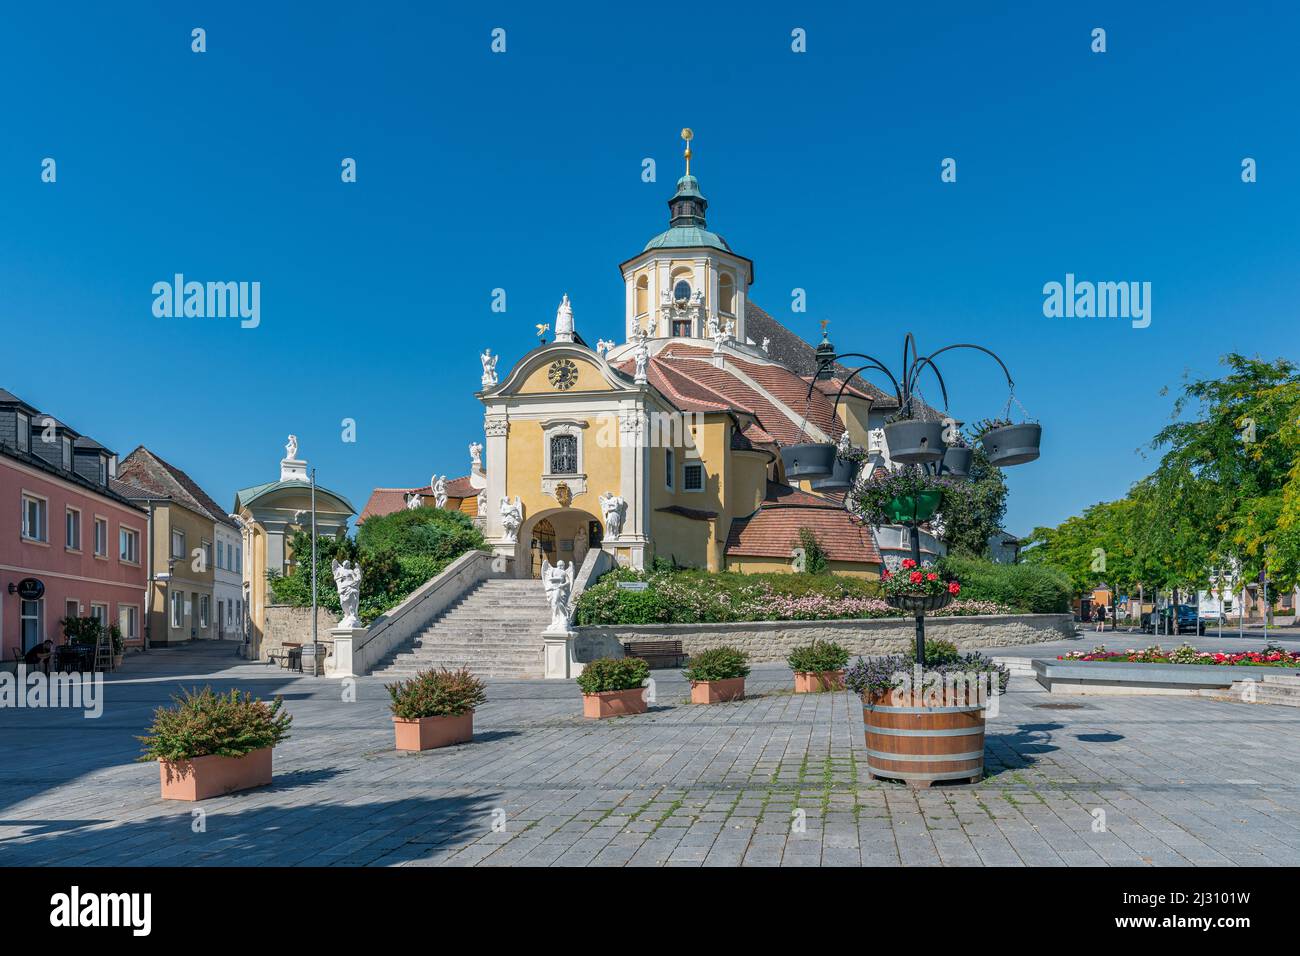 The Bergkirche or Haydn Church in Eisenstadt, Burgenland, Austria Stock Photo